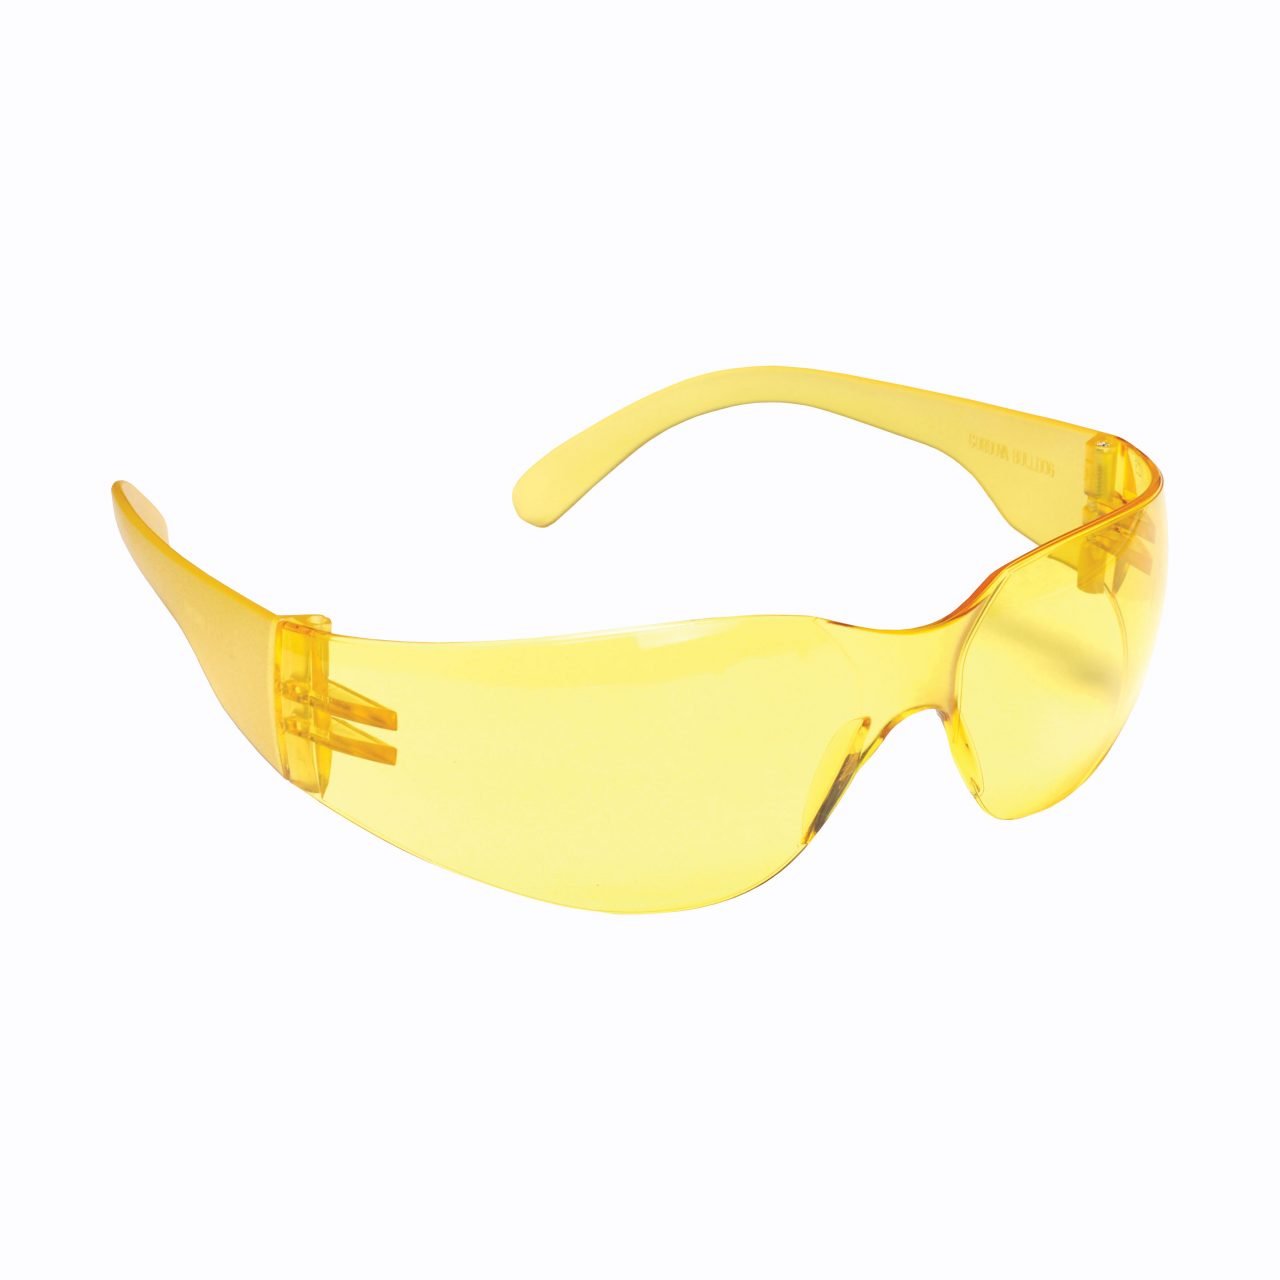 Cordova Bulldog Safety Glasses - SPEHB30S